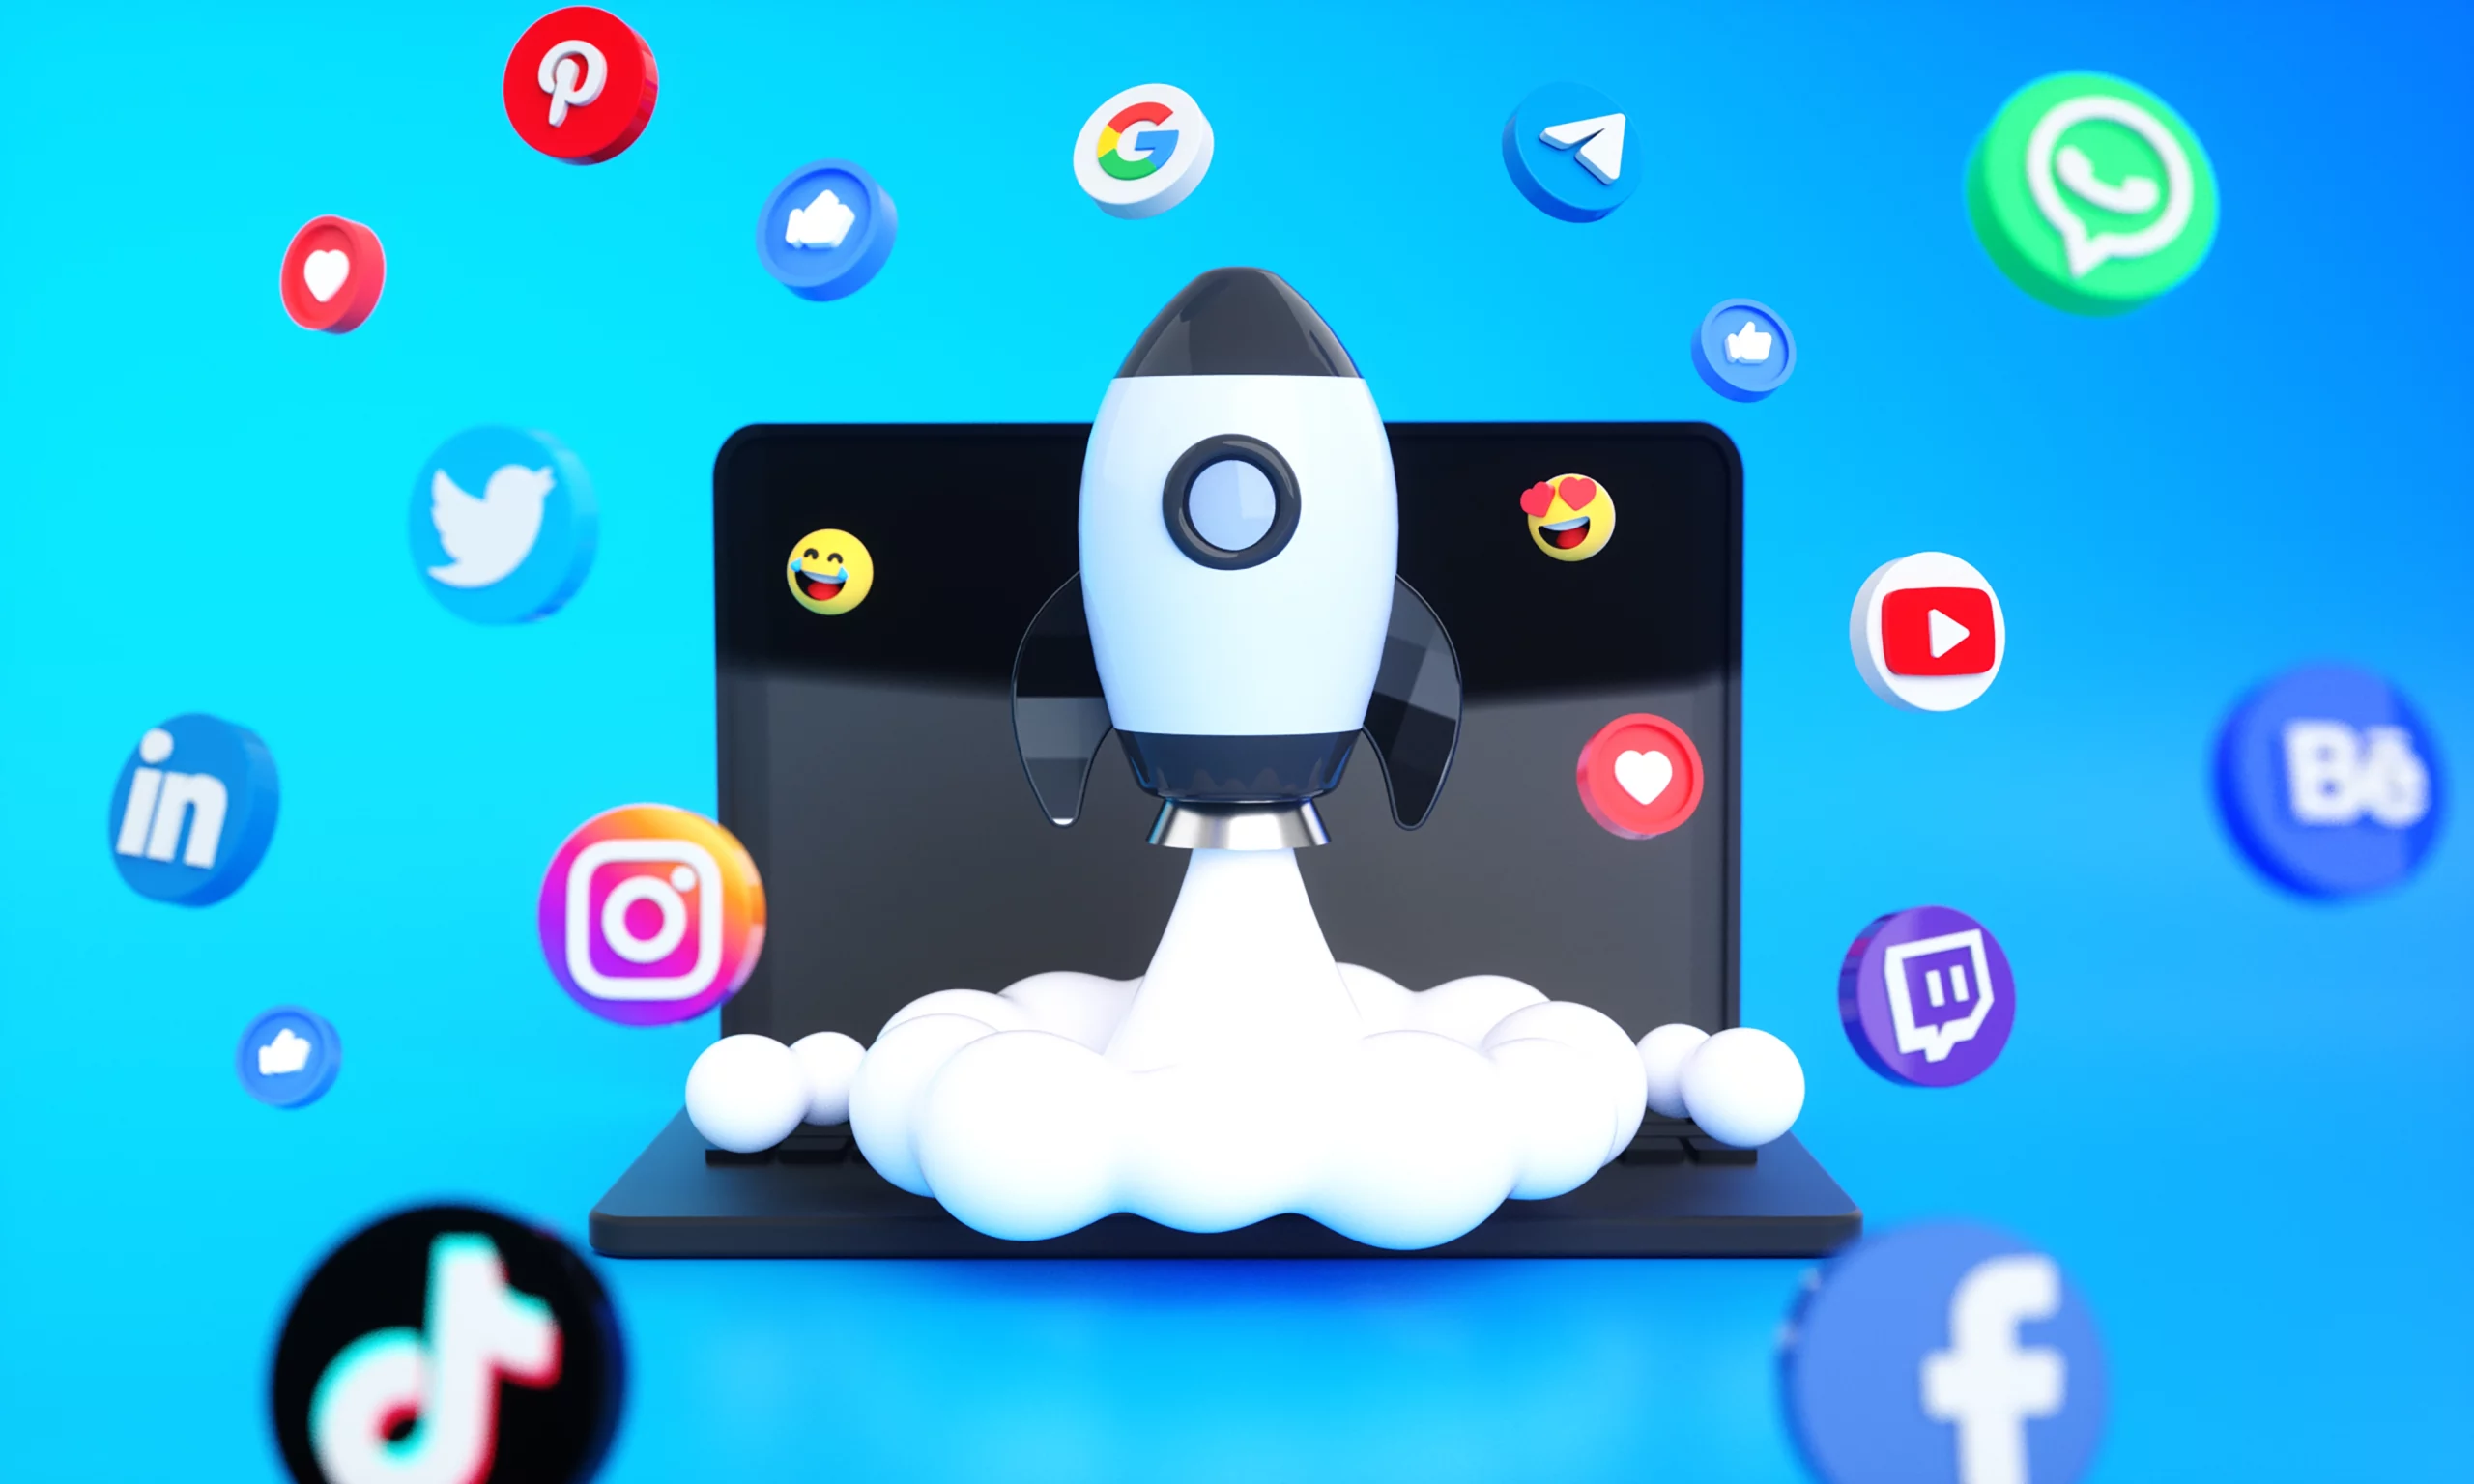 icones logos medias sociaux fusee spatiale 3d pour marketing medias numeriques sociaux scaled Boost Digital